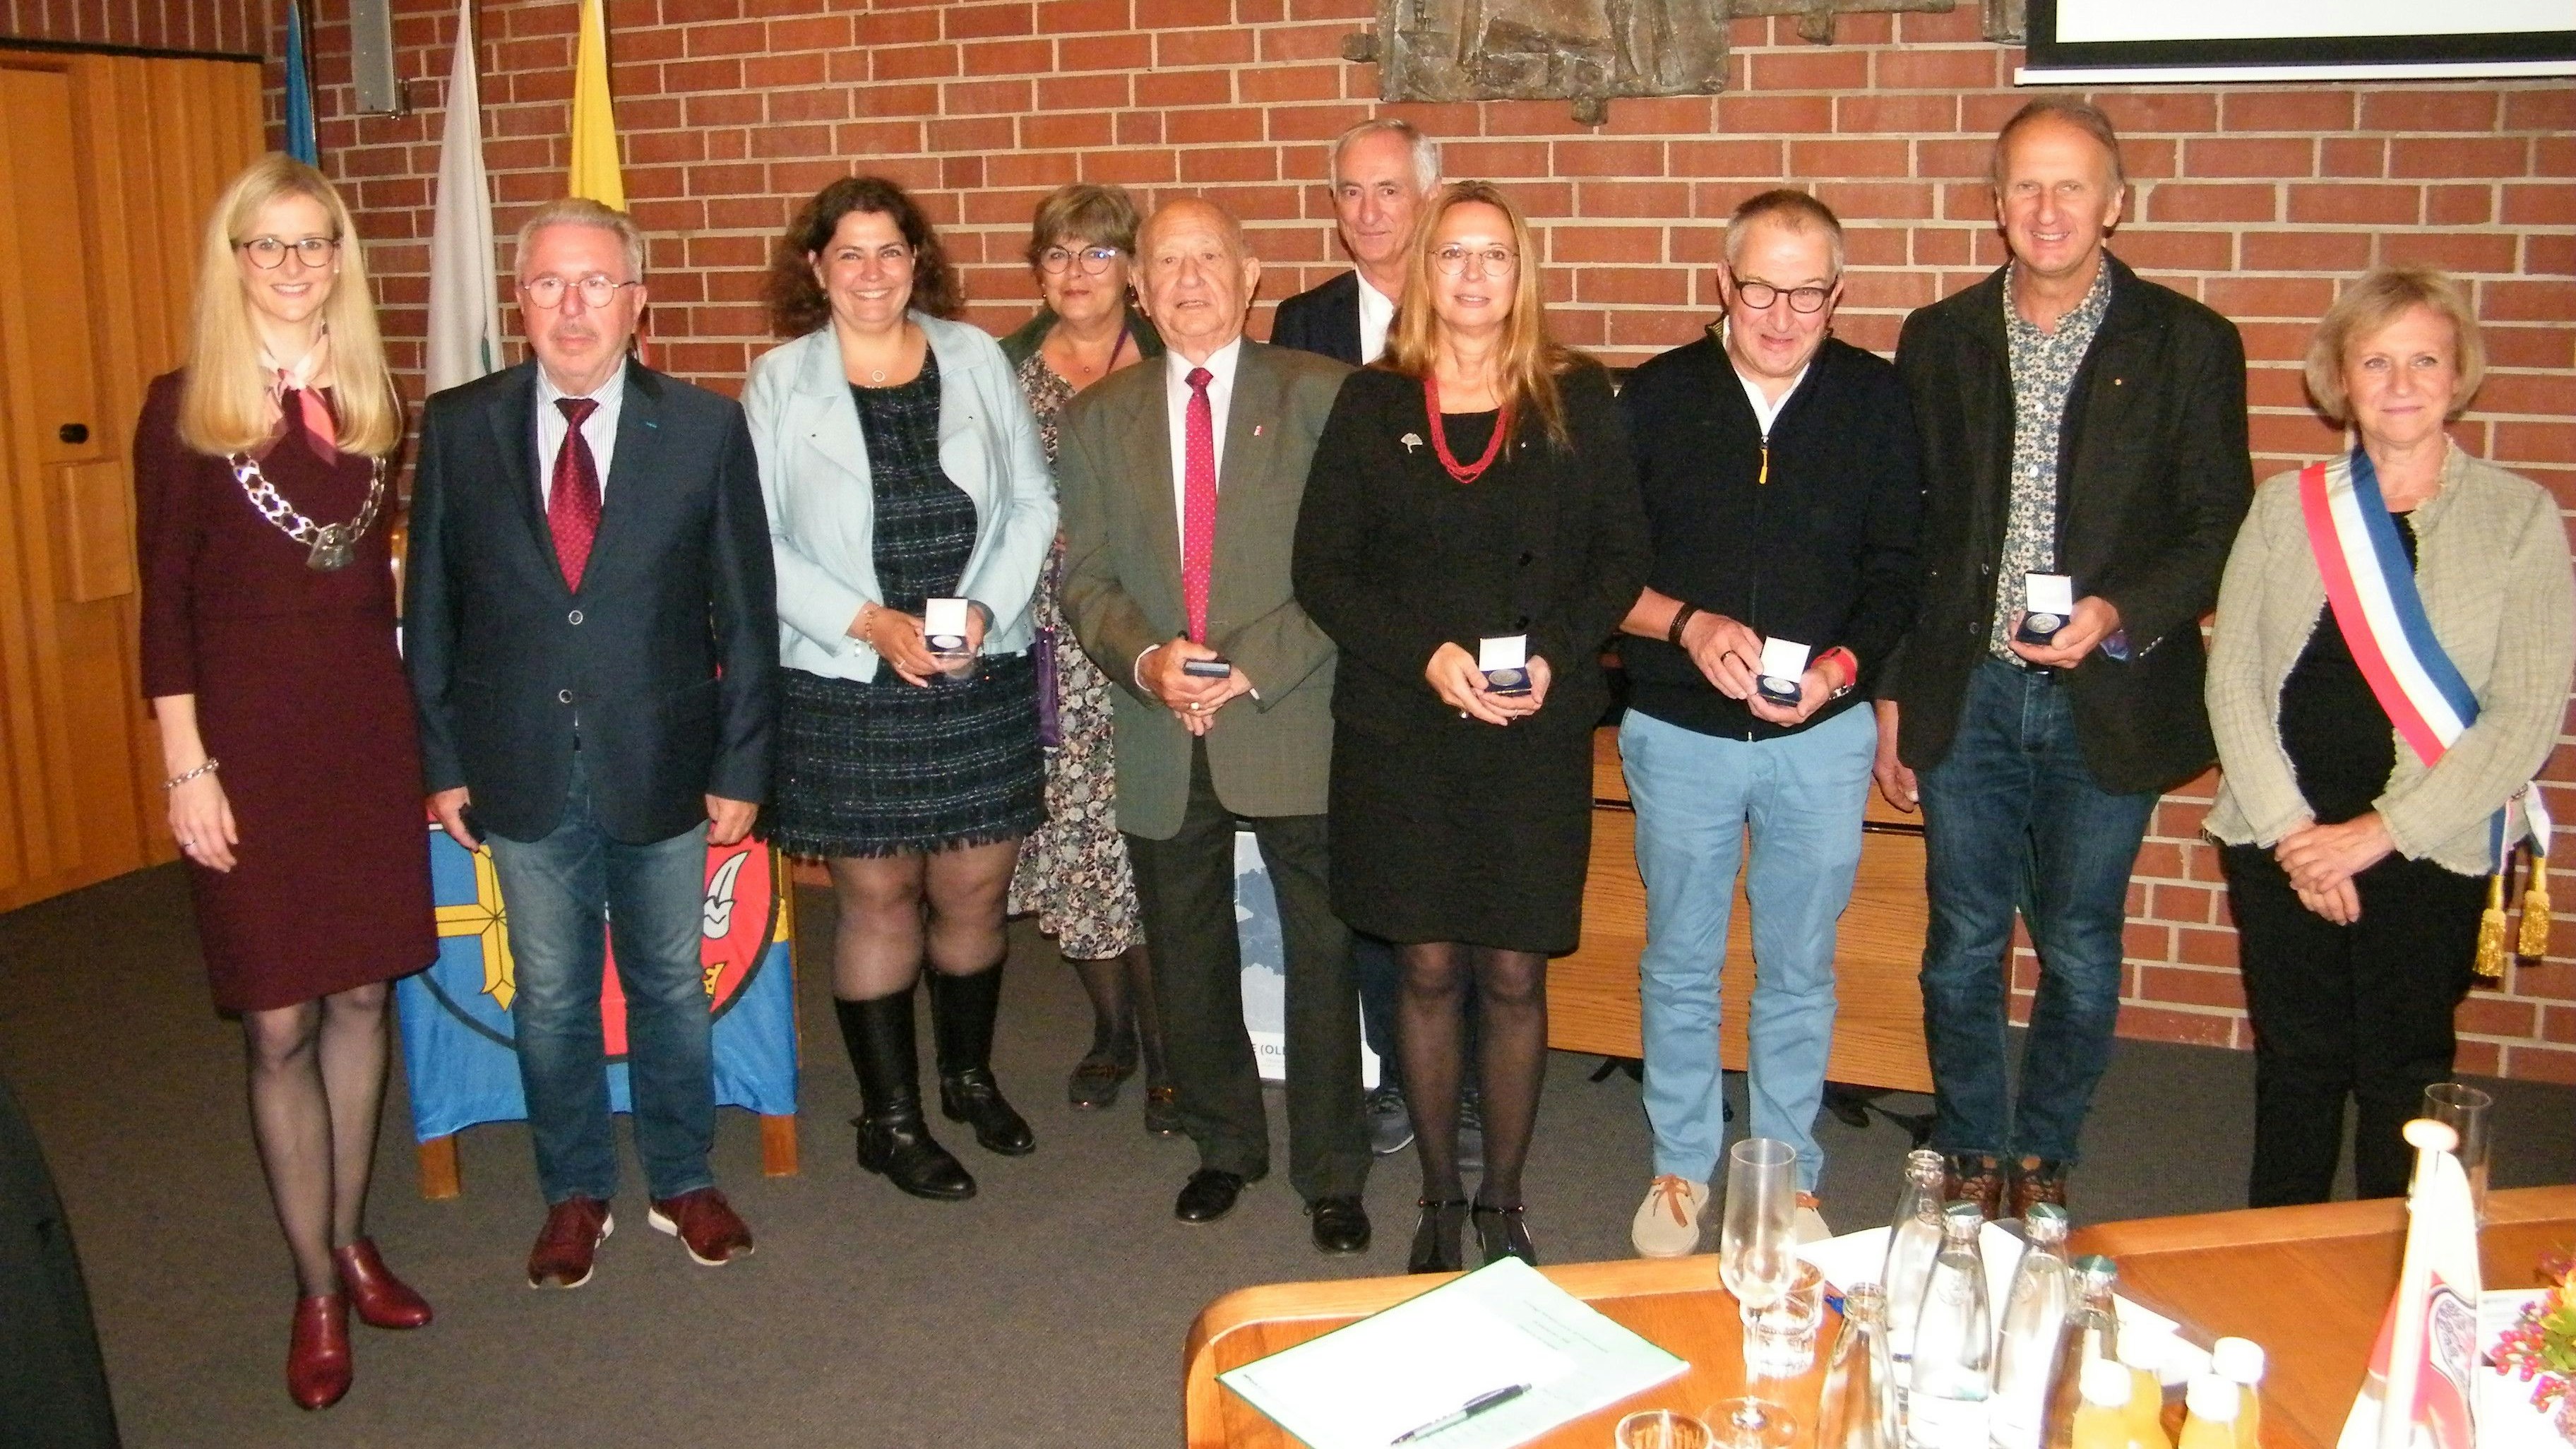 Die Bürgermeisterinnen Dr. Henrike Voet (links) und Rachel Baechtel (rechts) ehrten gemeinsam 8 Rixheimer Gäste. Foto: Gerwanski